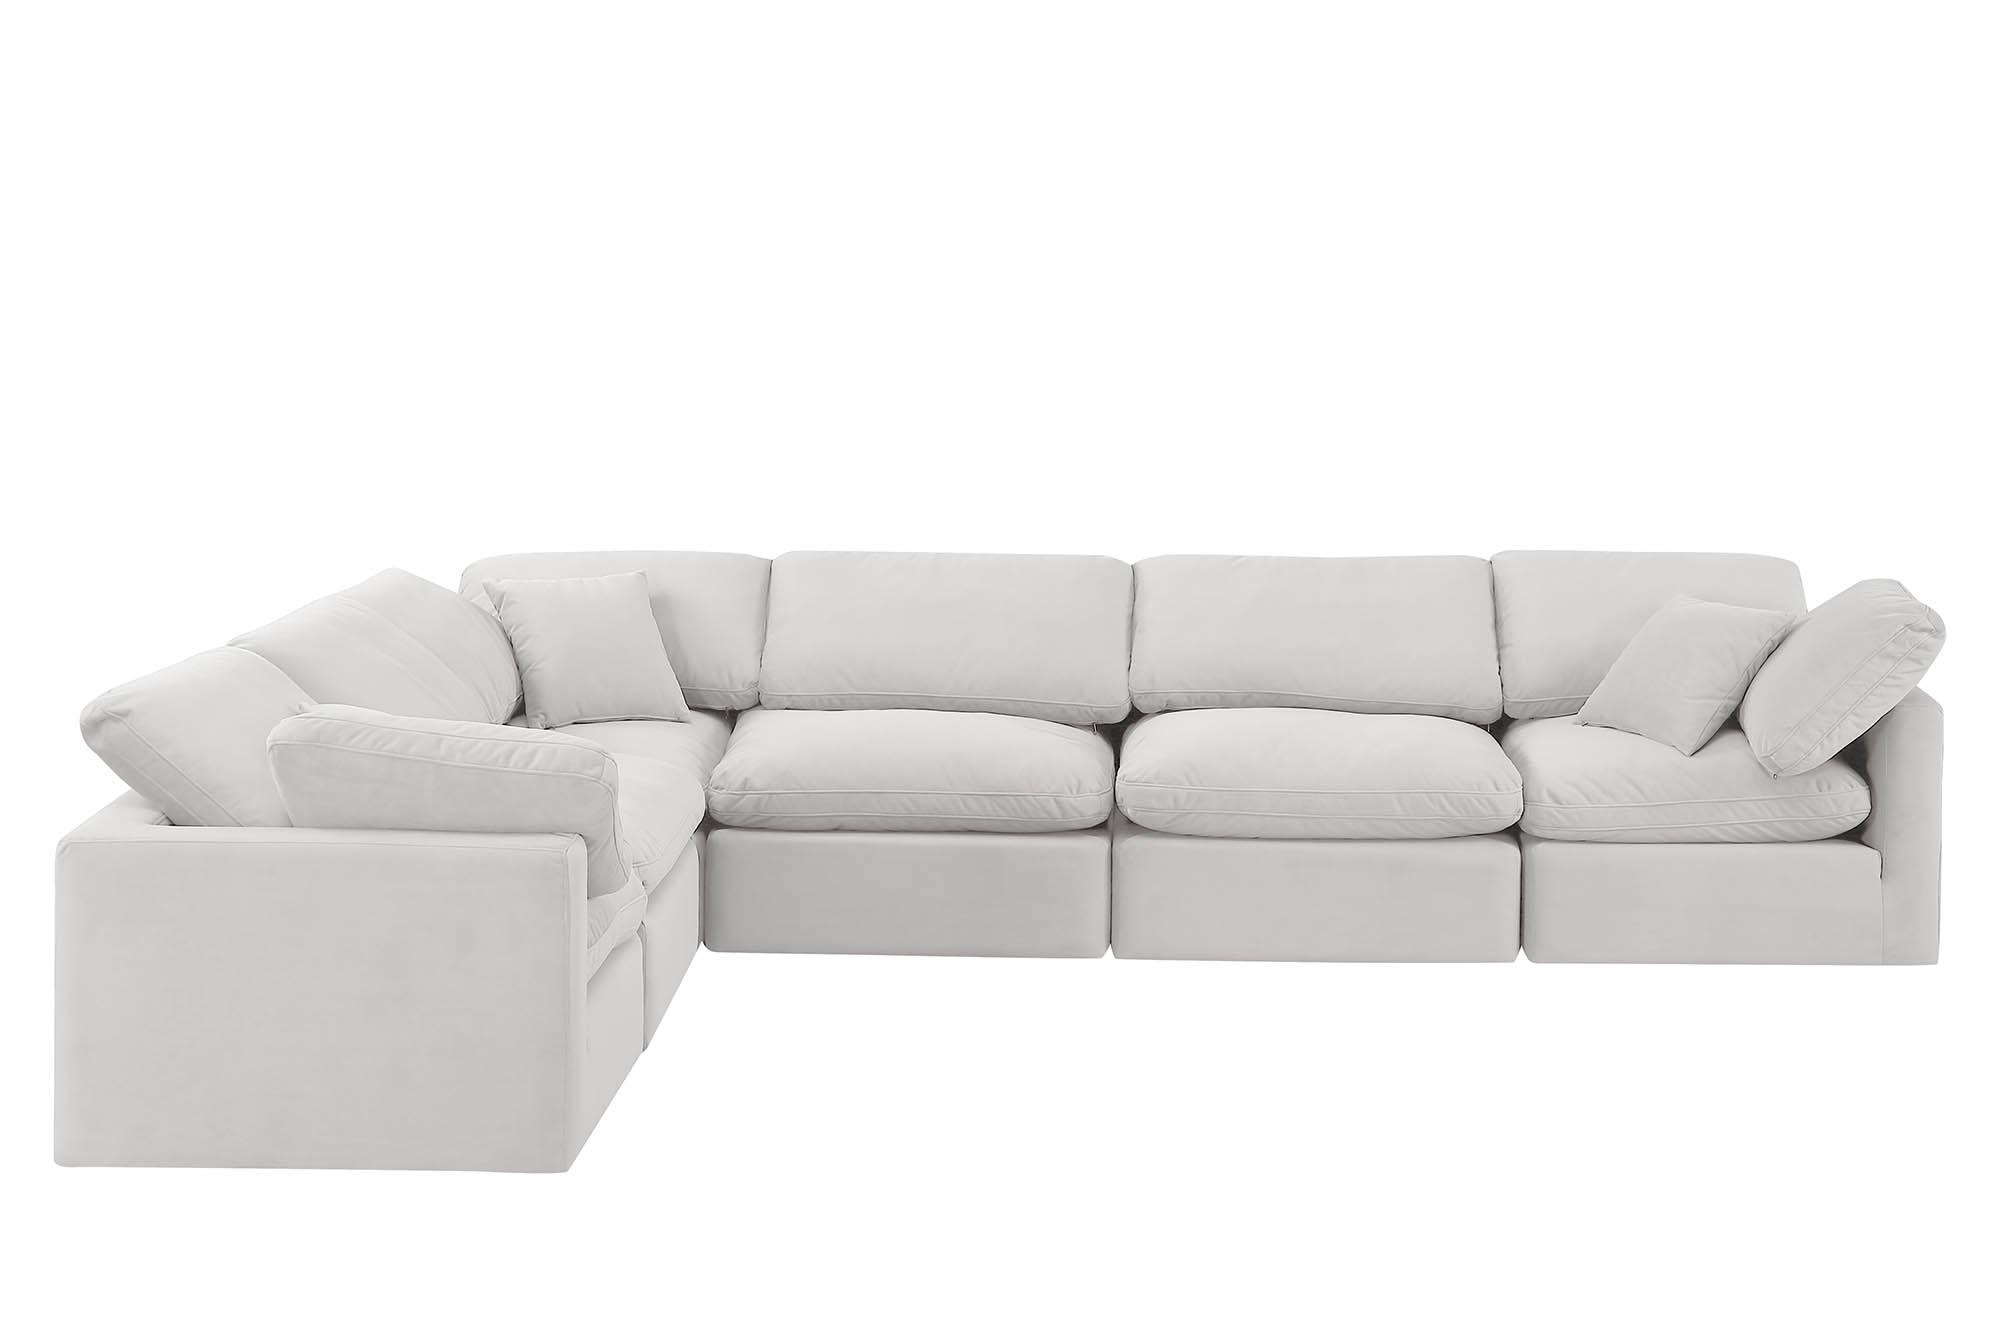 

    
Meridian Furniture INDULGE 147Cream-Sec6A Modular Sectional Sofa Cream 147Cream-Sec6A
